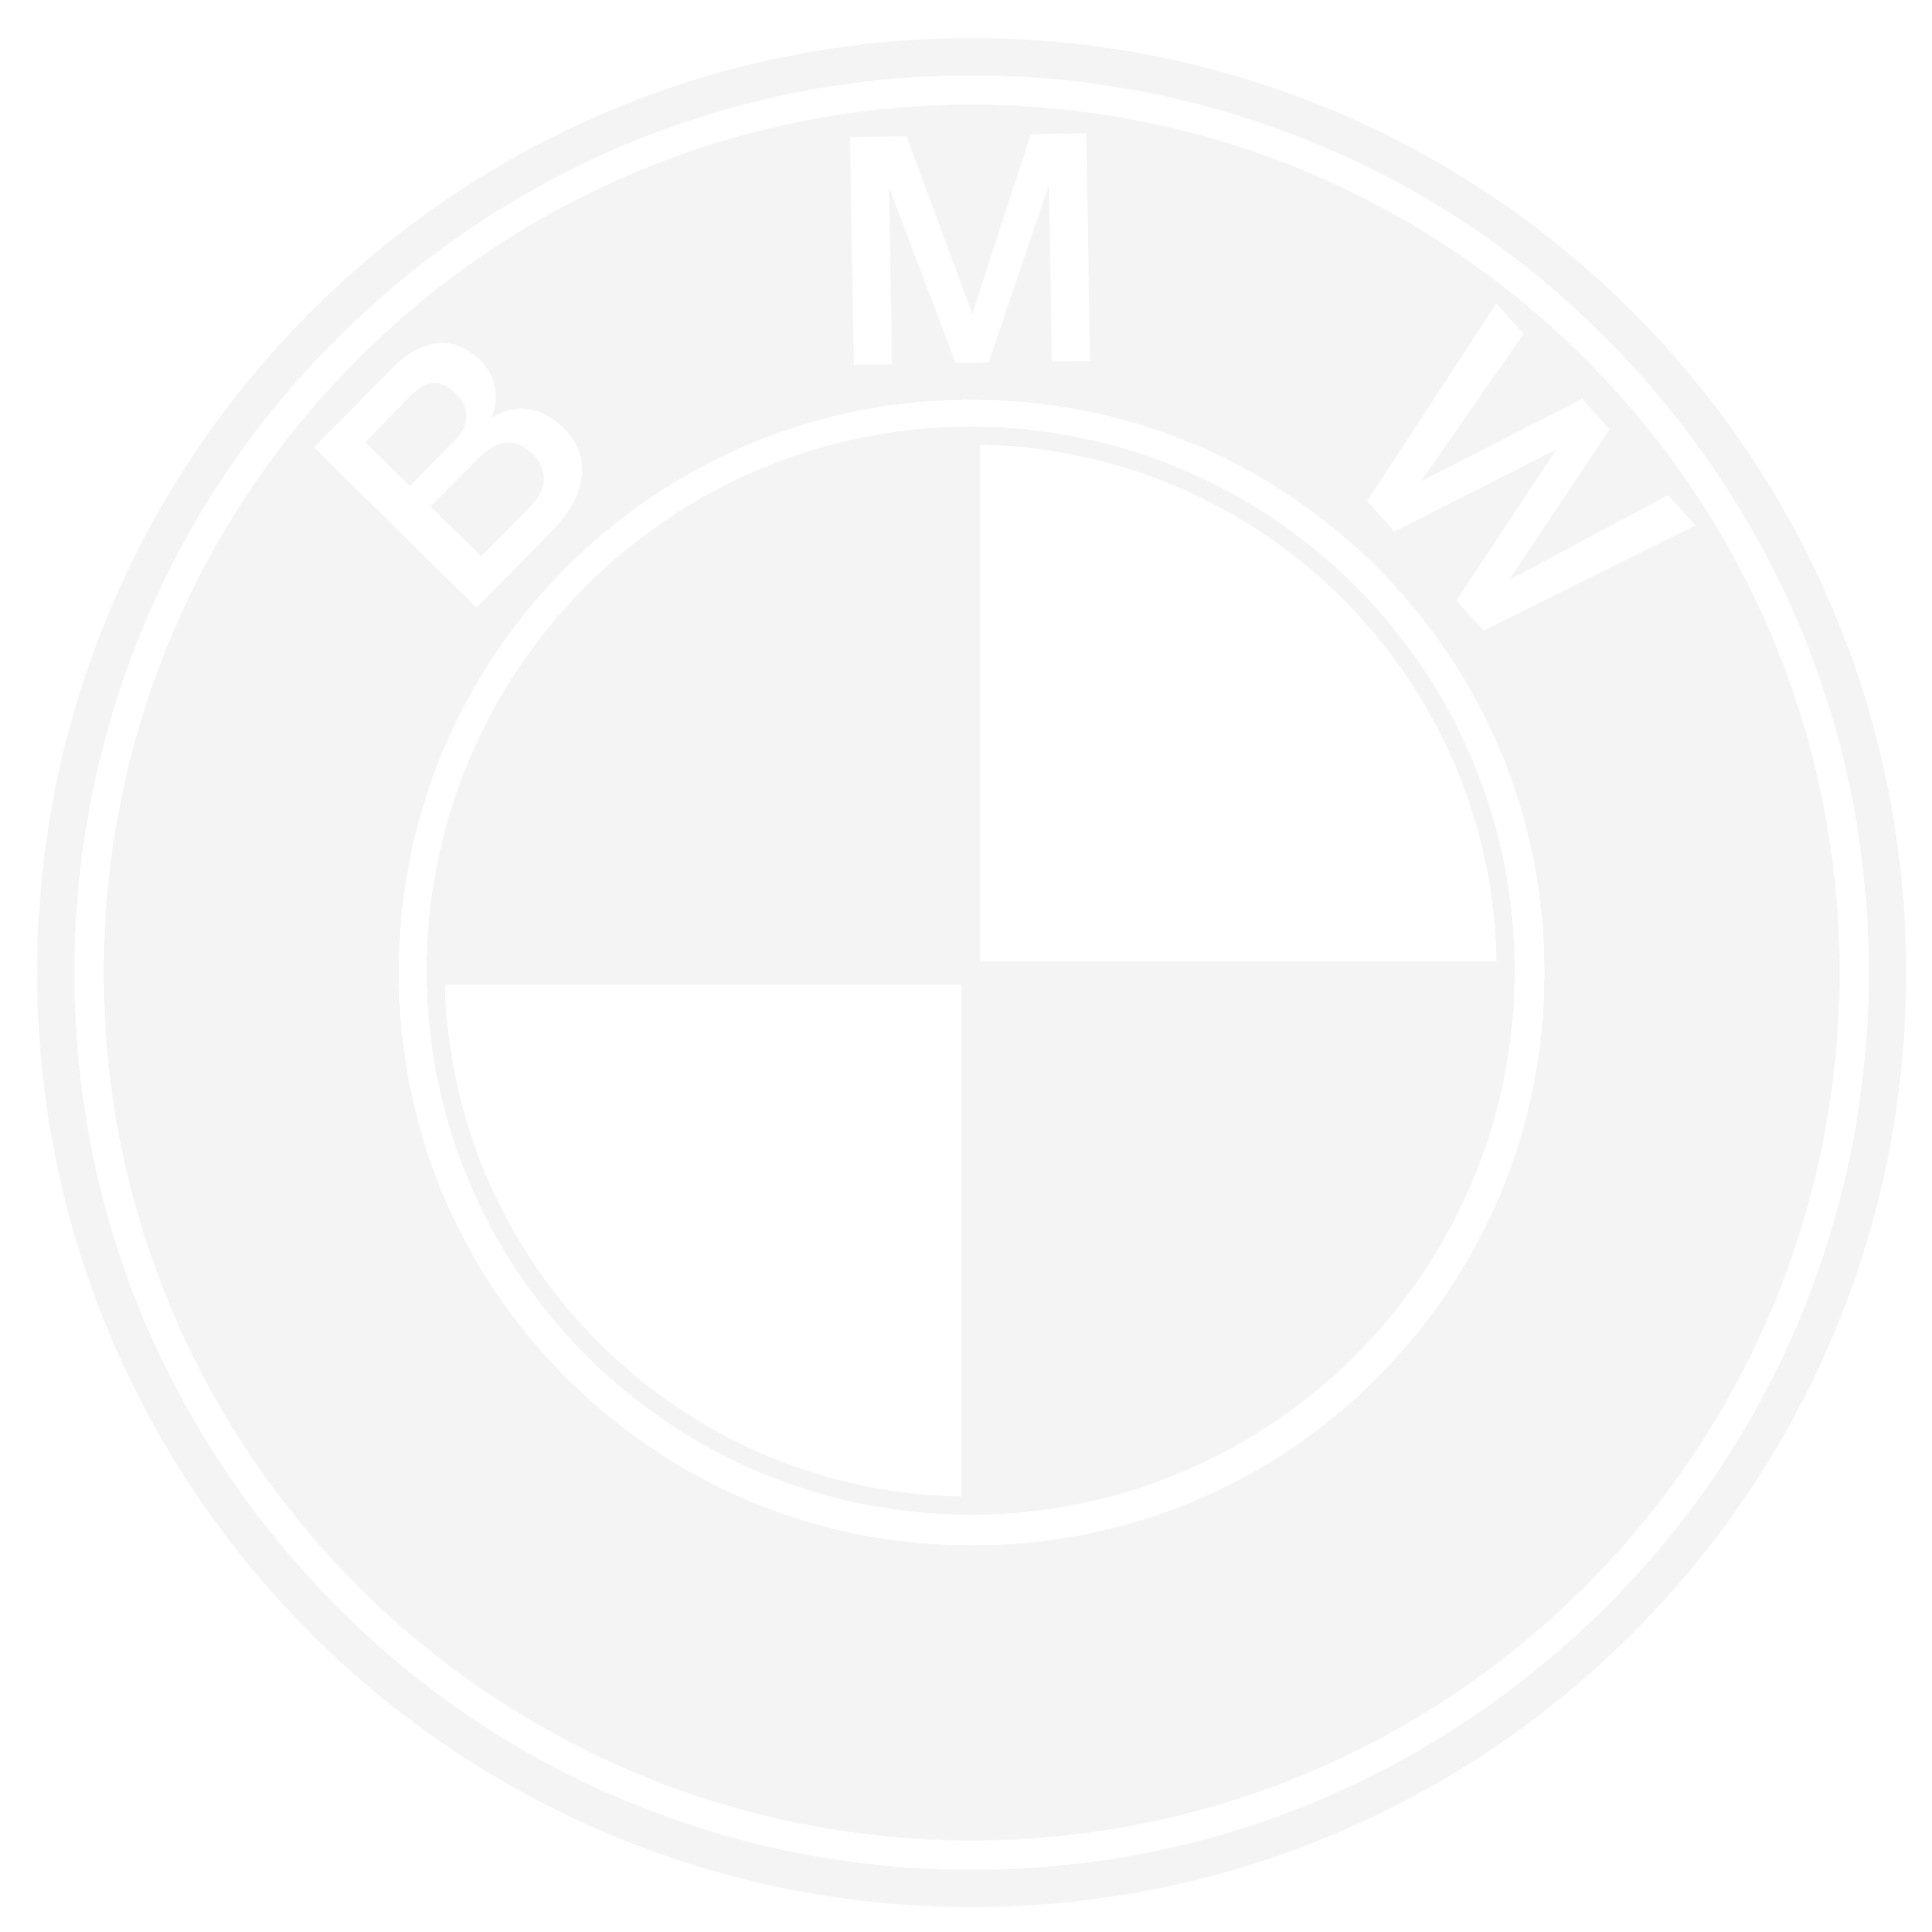 Auto, bmw, car, drive, poi, point, pointer icon | Icon search engine